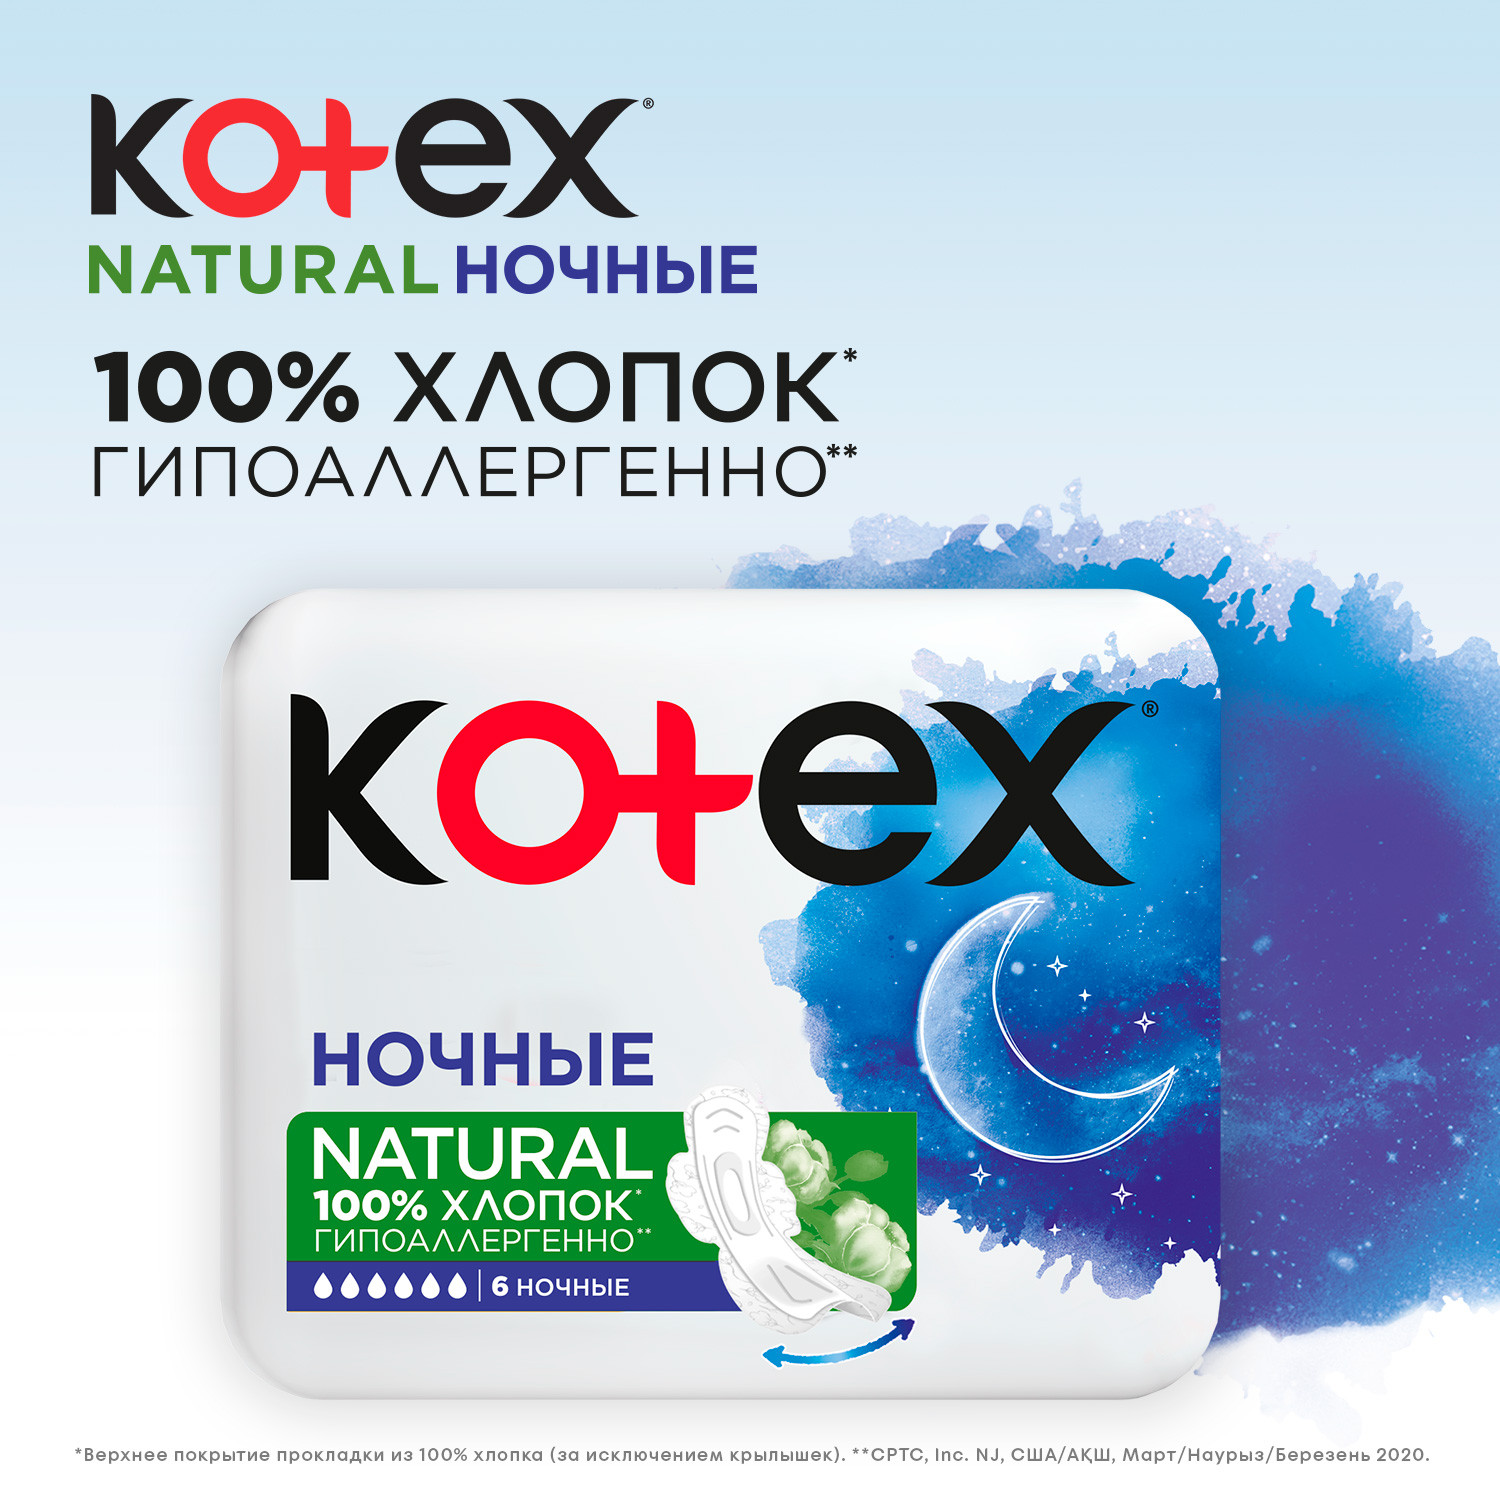 Прокладки KOTEX Natural ночные 6шт - фото 5